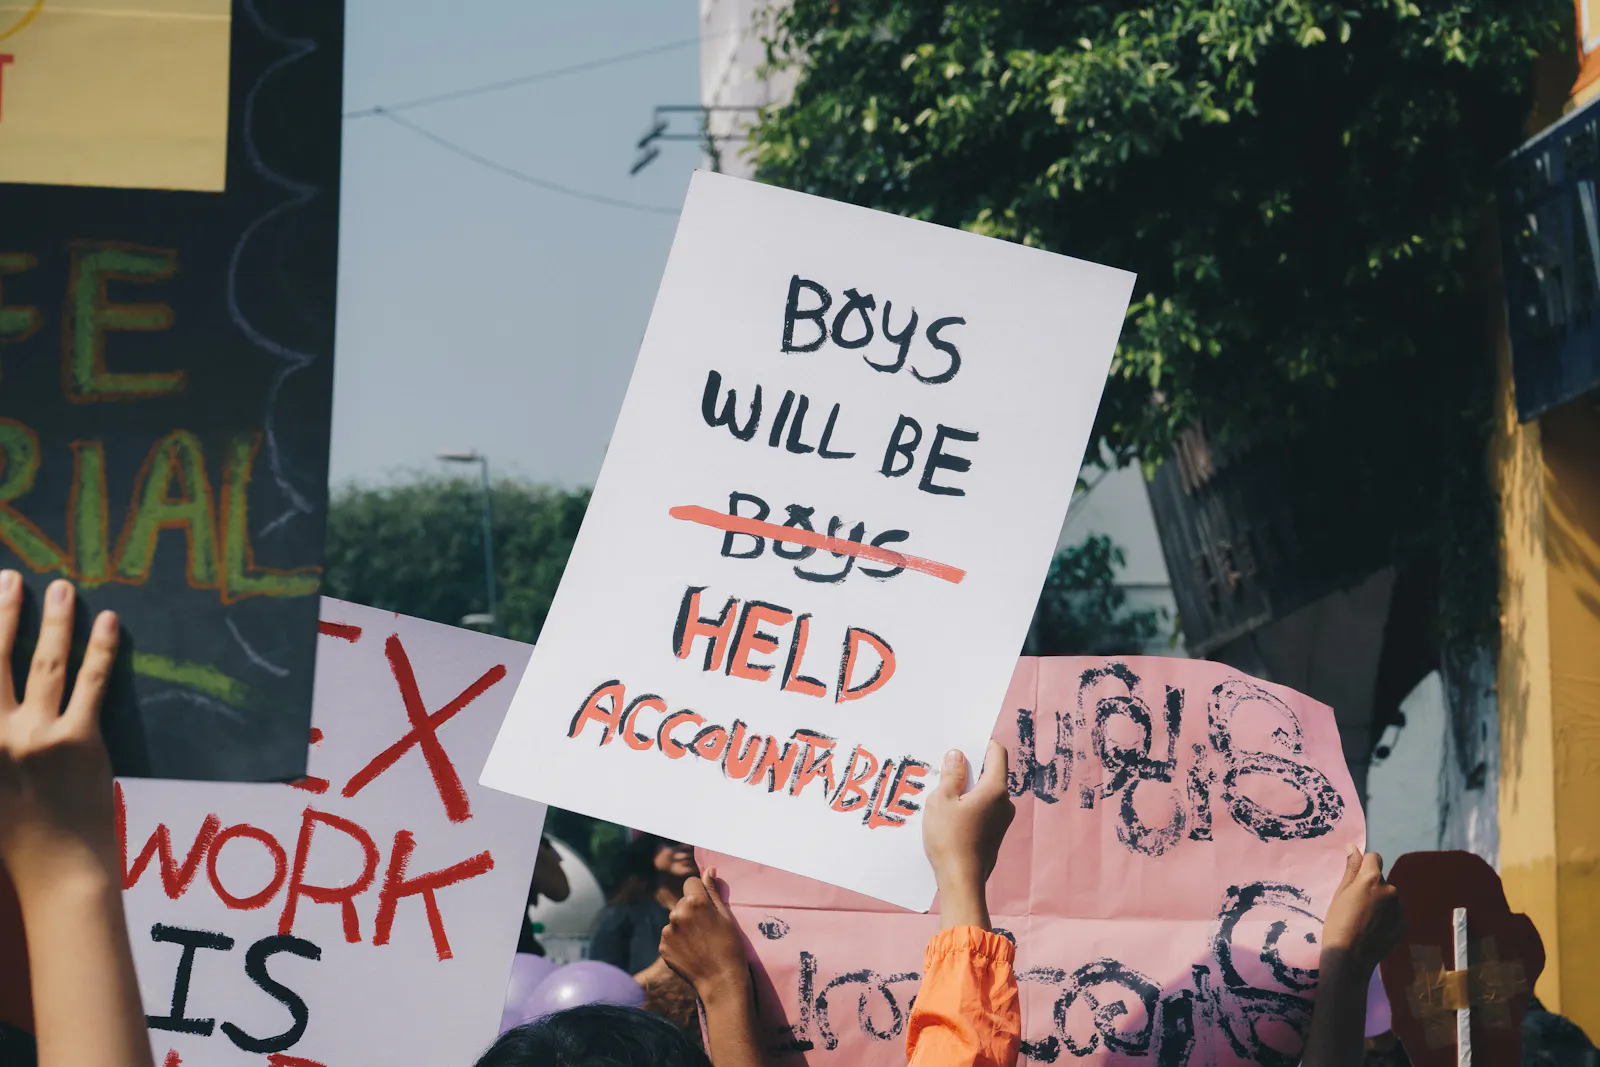 Demo-Szene: Ein Schild wird hochgehalten auf dem steht: "Boys will be boys", "boys" ist durchgestrichen und durch "held accountable" ersetzt.